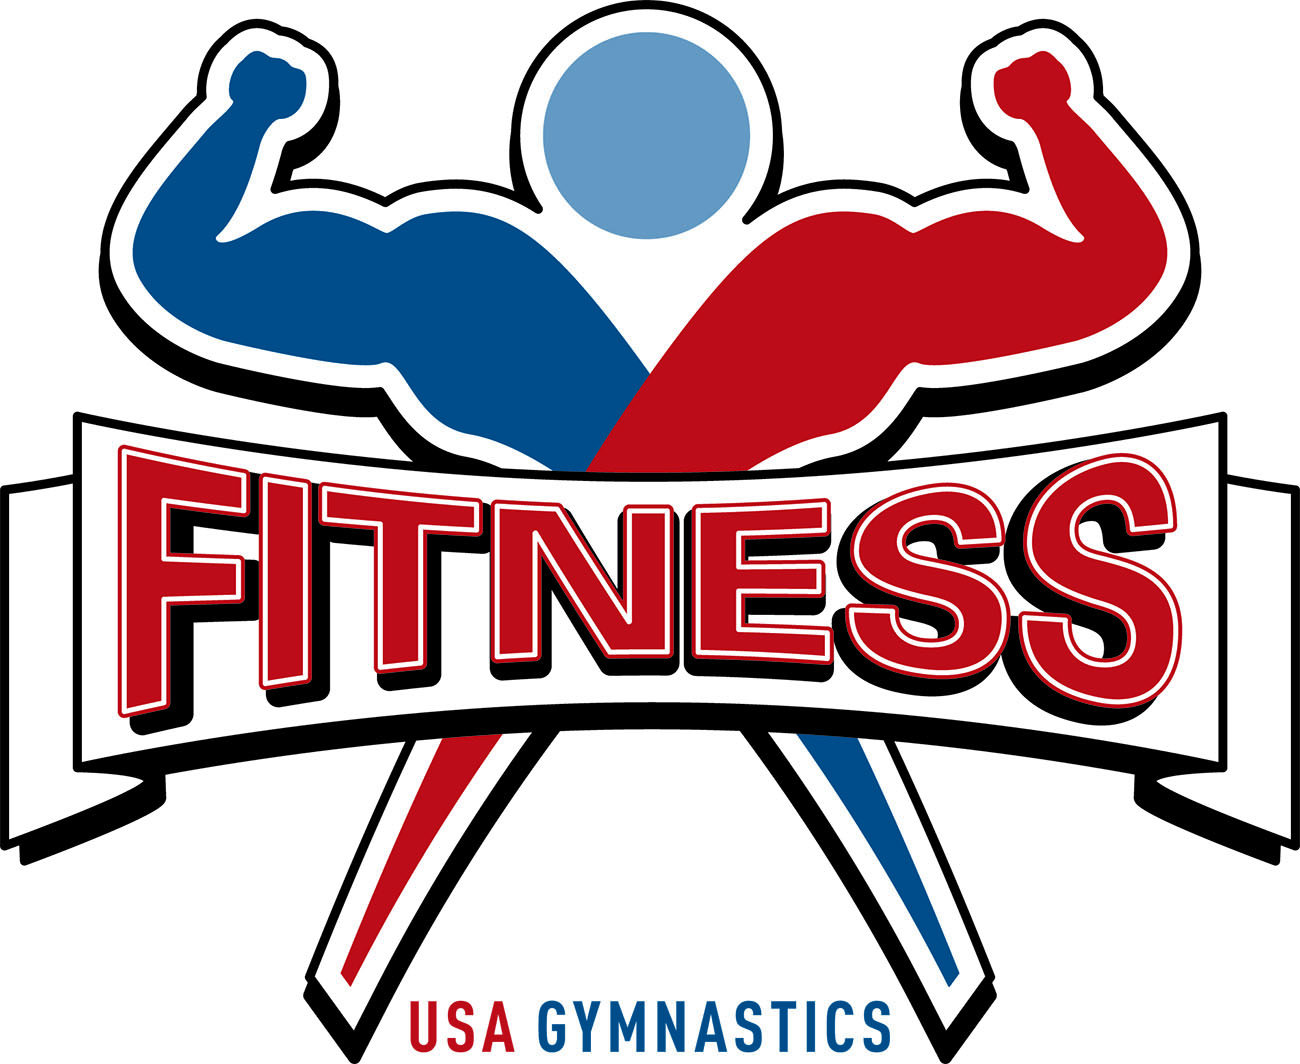 Usa gymnastics Logos